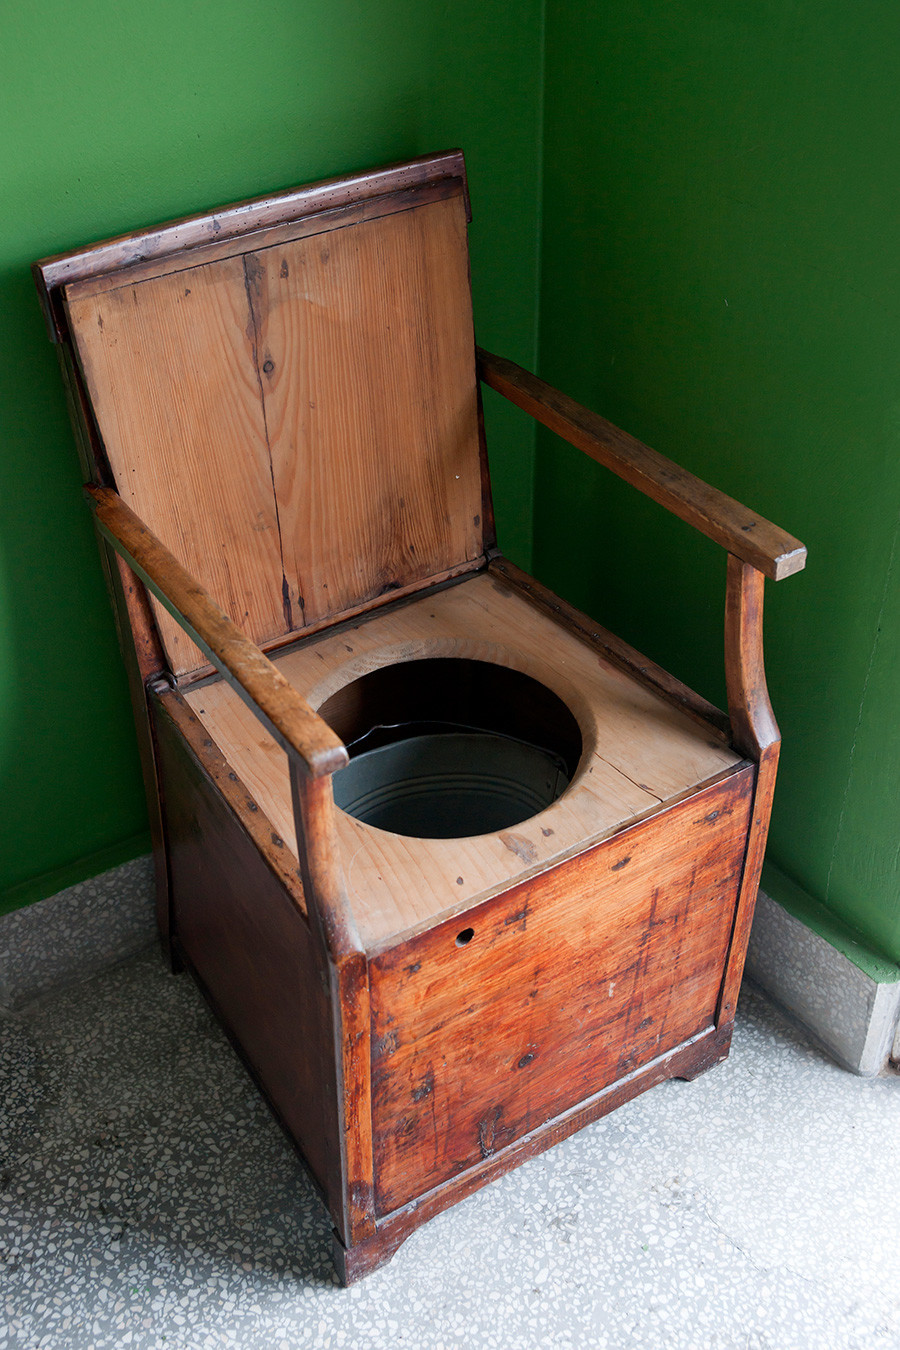 Banheiro antigo de cadeira com bacia.